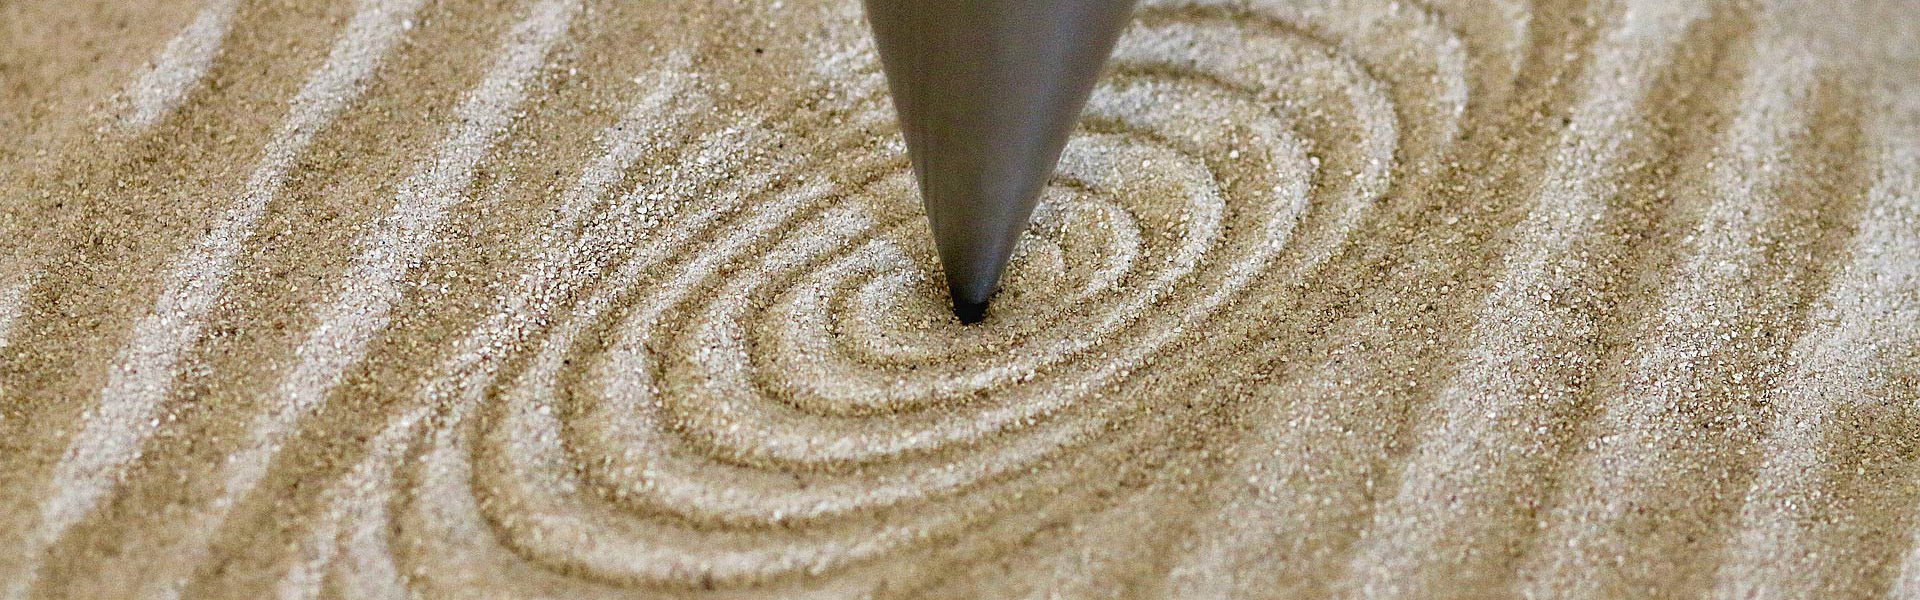 Spiralspuren im Sand